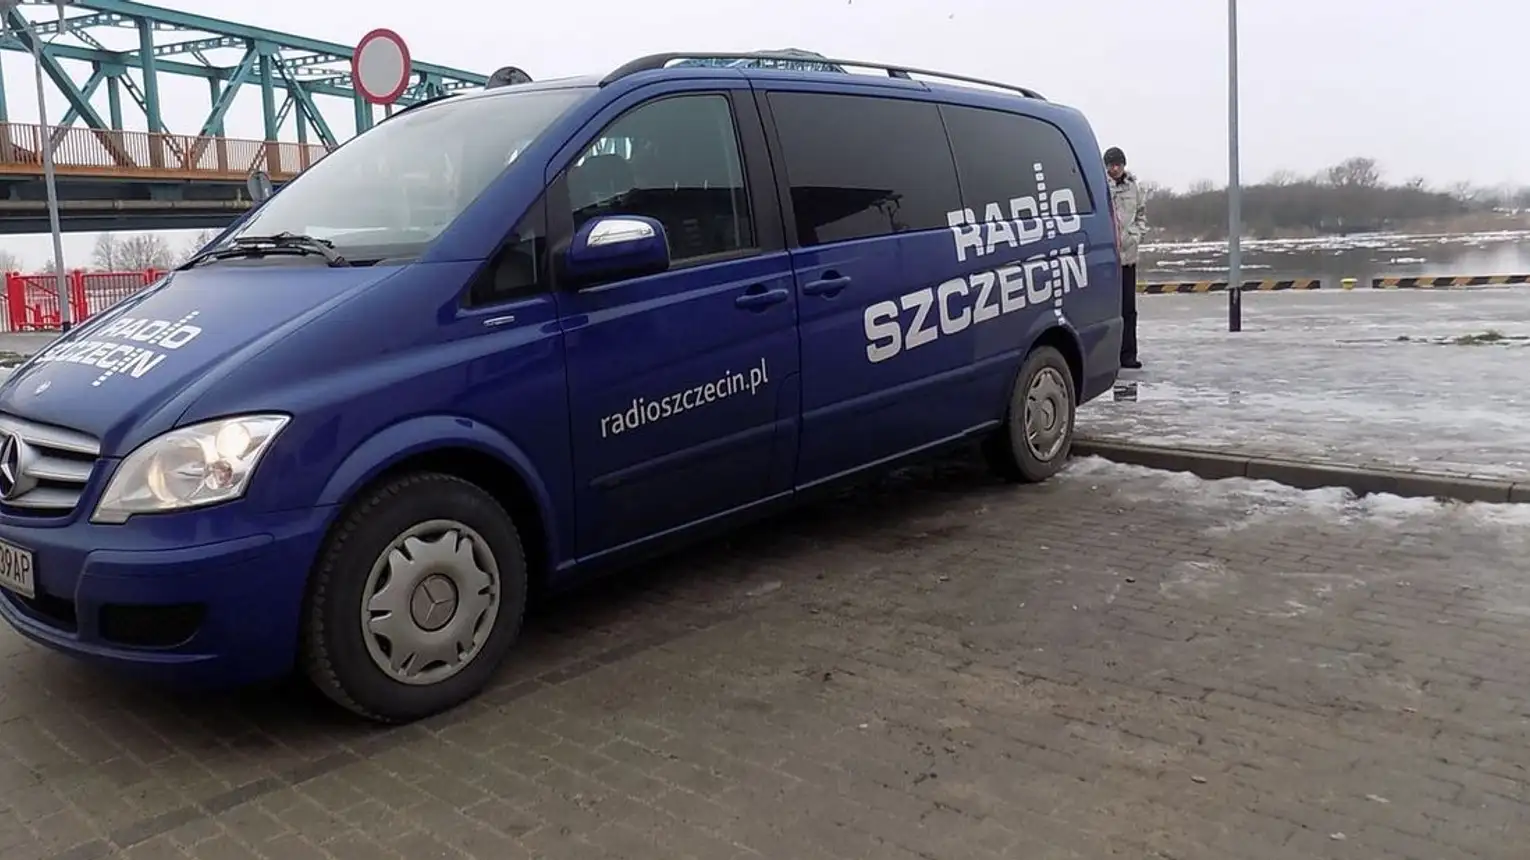 Radio Szczecin nad przepaścią. Propagandowa rysa przeszkadza dziennikarzom